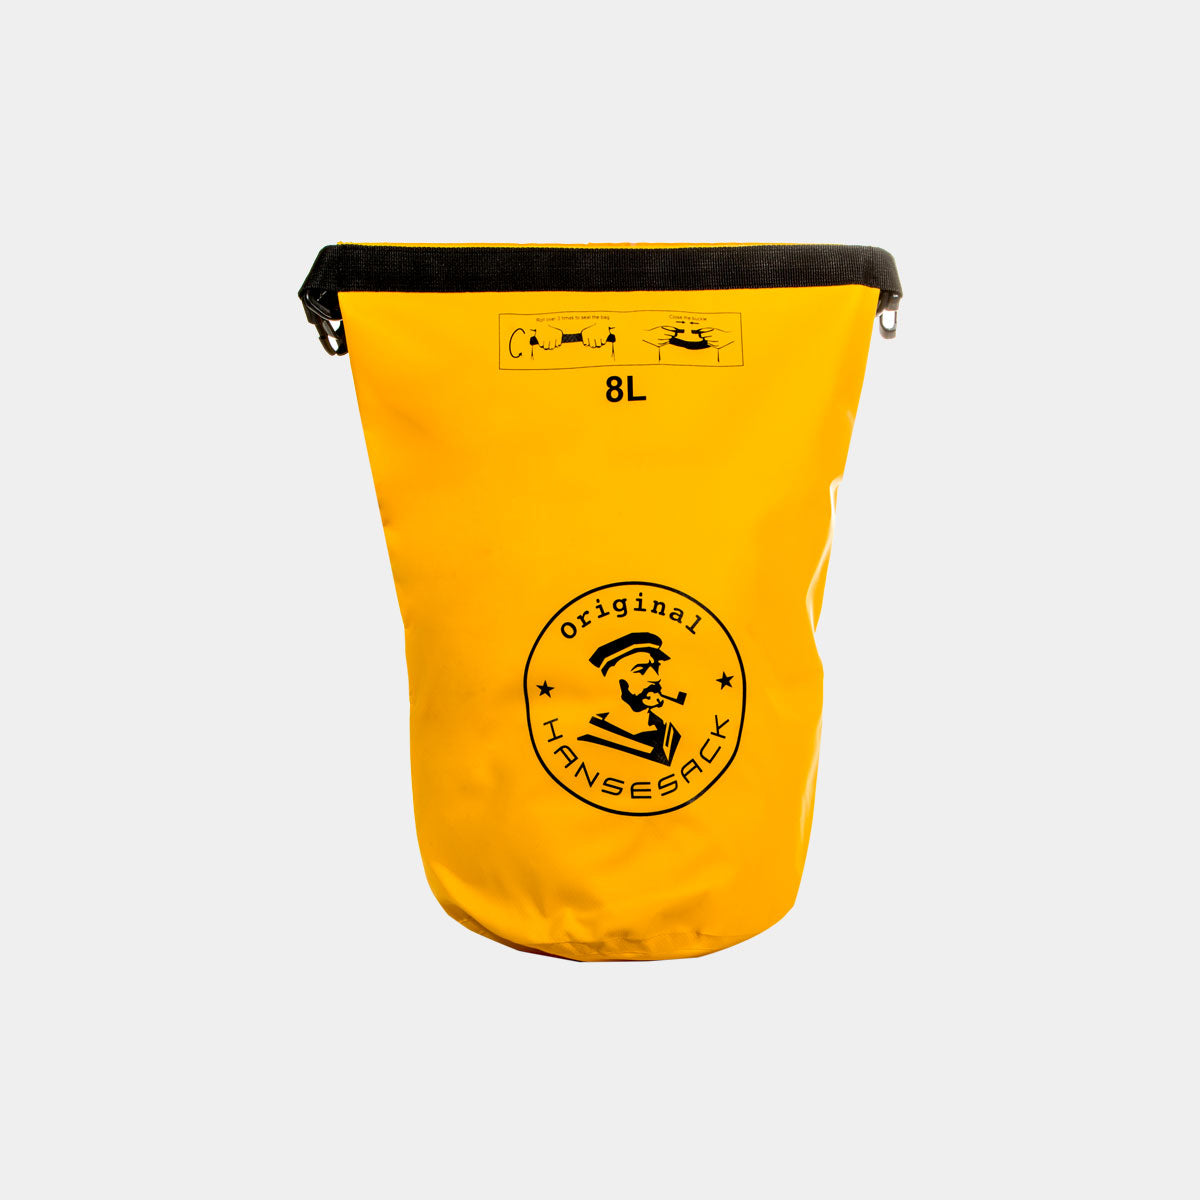 Hansesack Produktbild gelber Hansesack PVC See Sack 8 Liter Variante offen von vorne